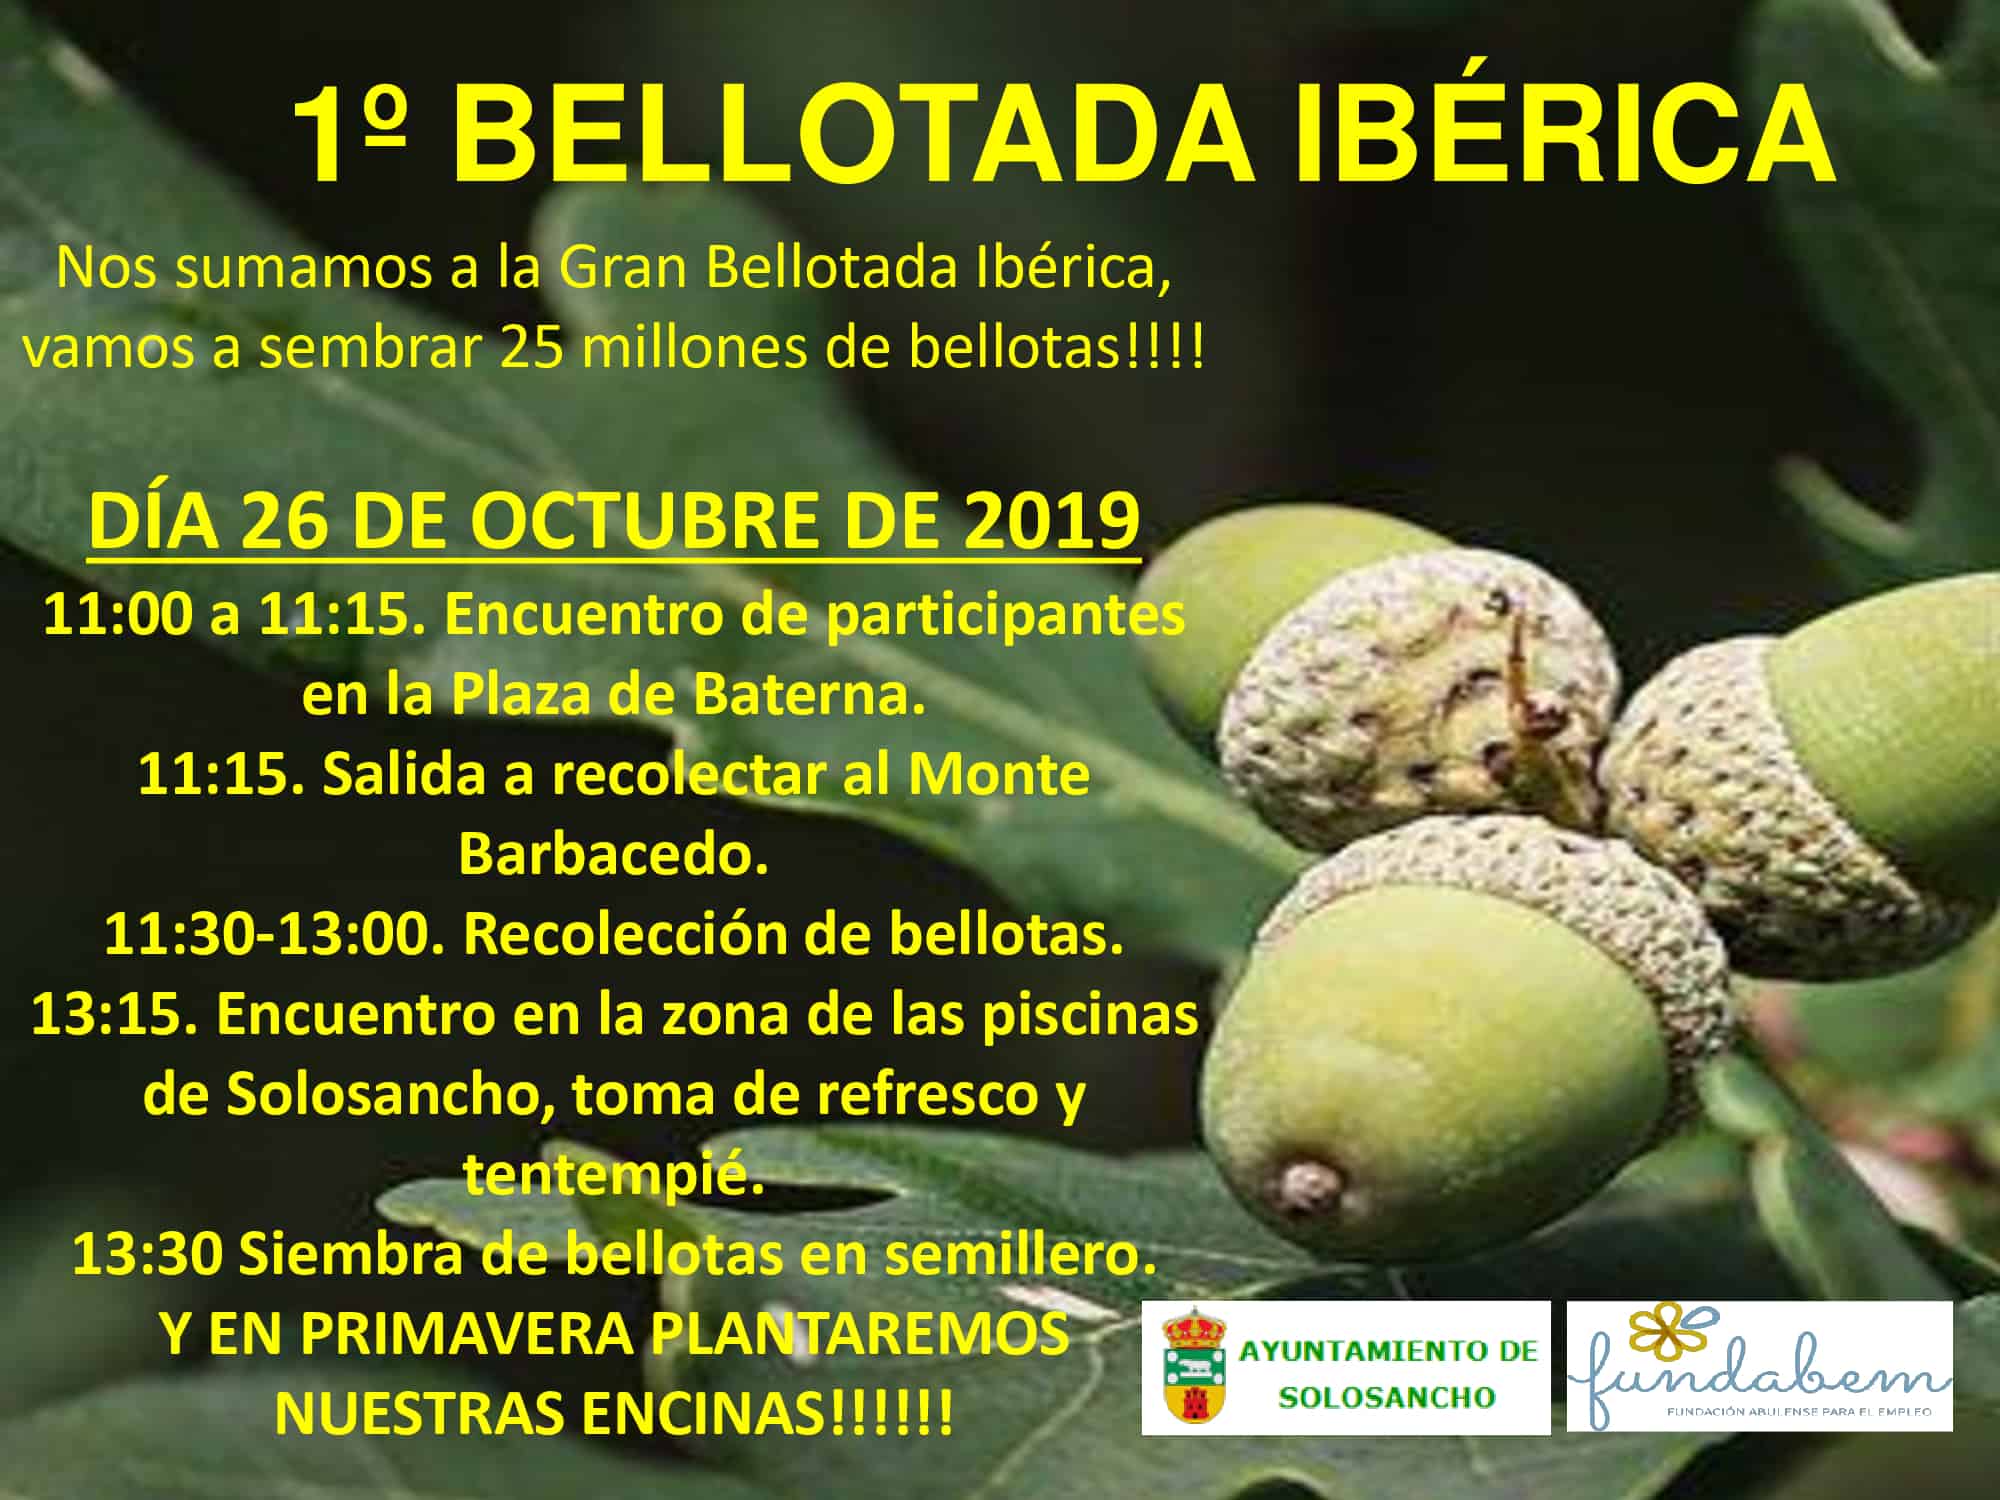 El día 26 de Octubre se celebrará en el Ayuntamiento de Solosancho la 1º Bellotada Ibérica.?